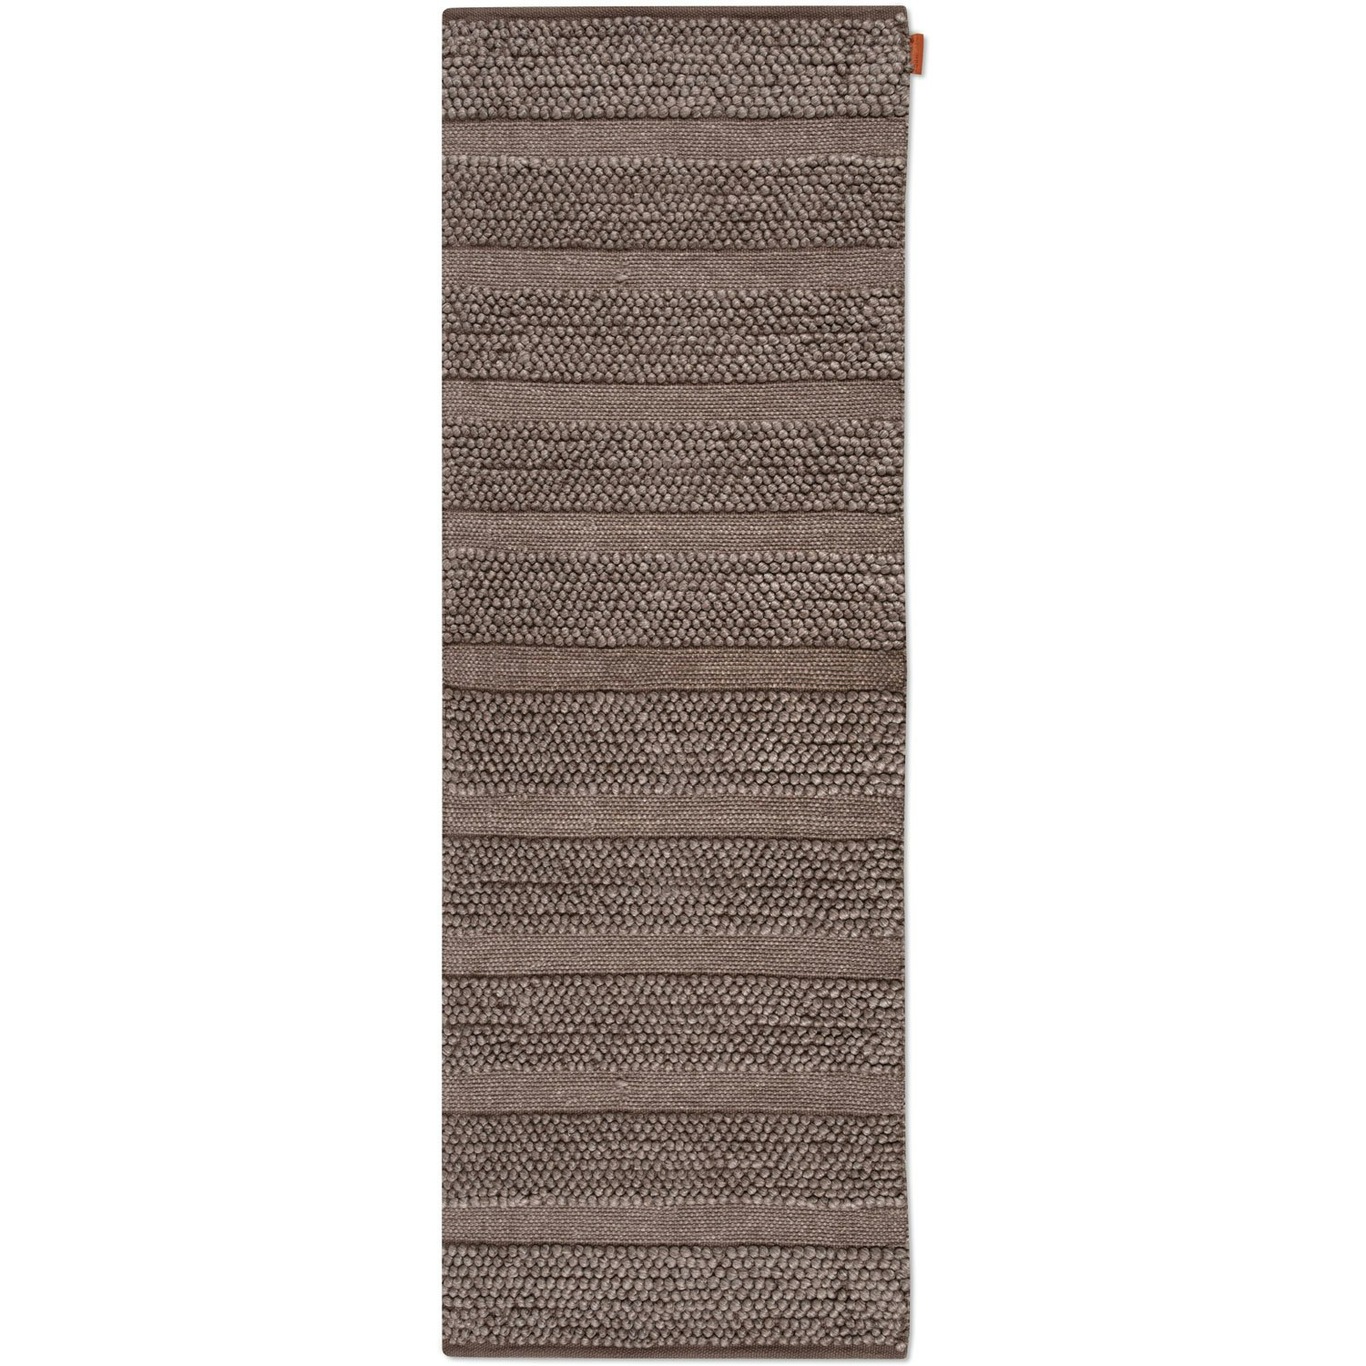 Lacuna Matto 70x200 cm, Taupe-ruskea